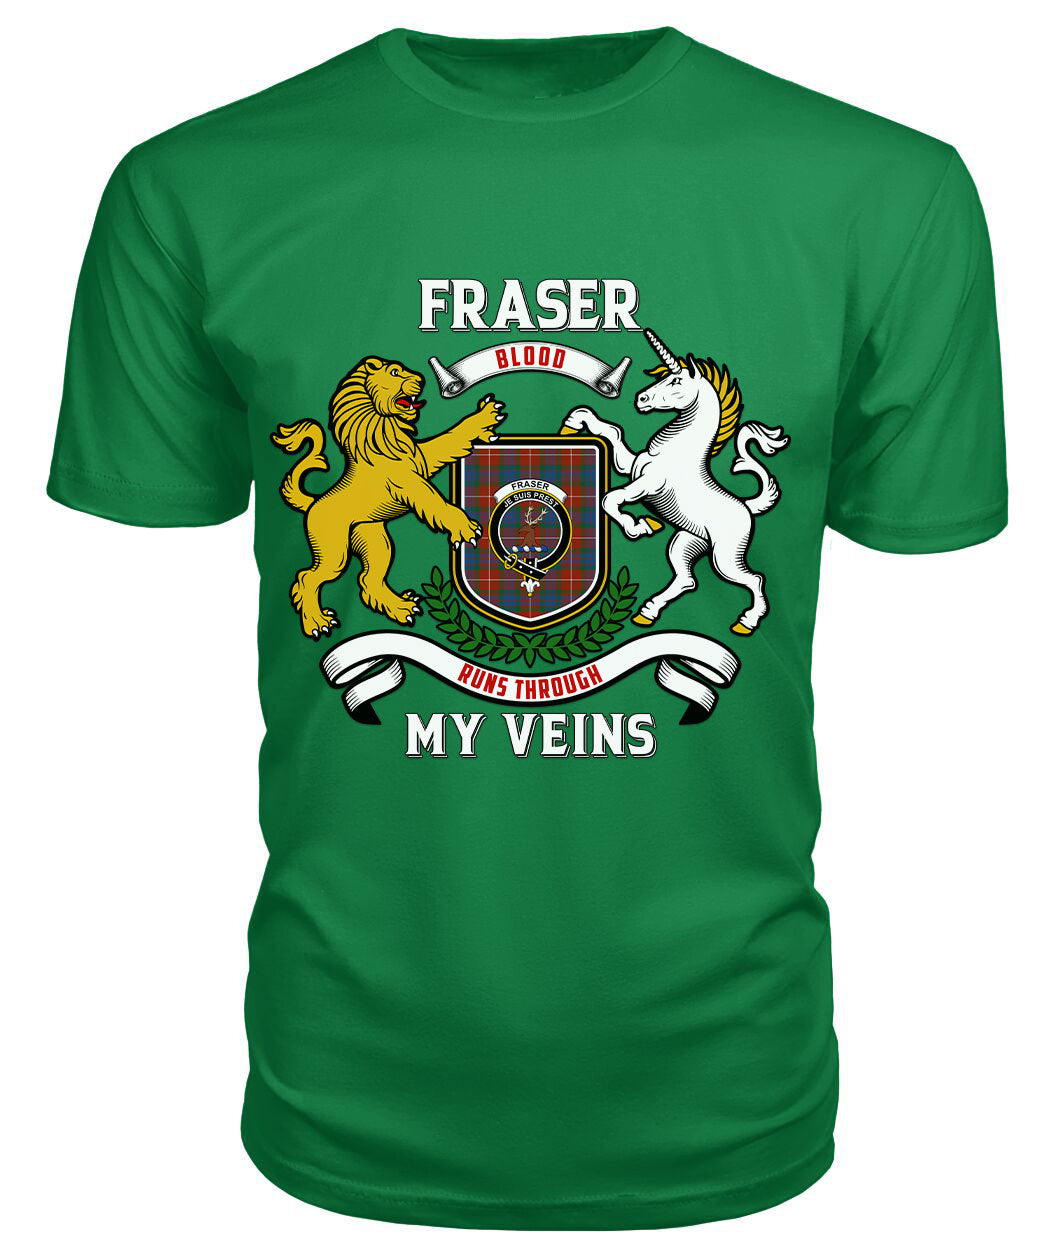 Fraser (of Lovat) Ancient Tartan Crest 2D T-shirt - Blood Runs Through My Veins Style